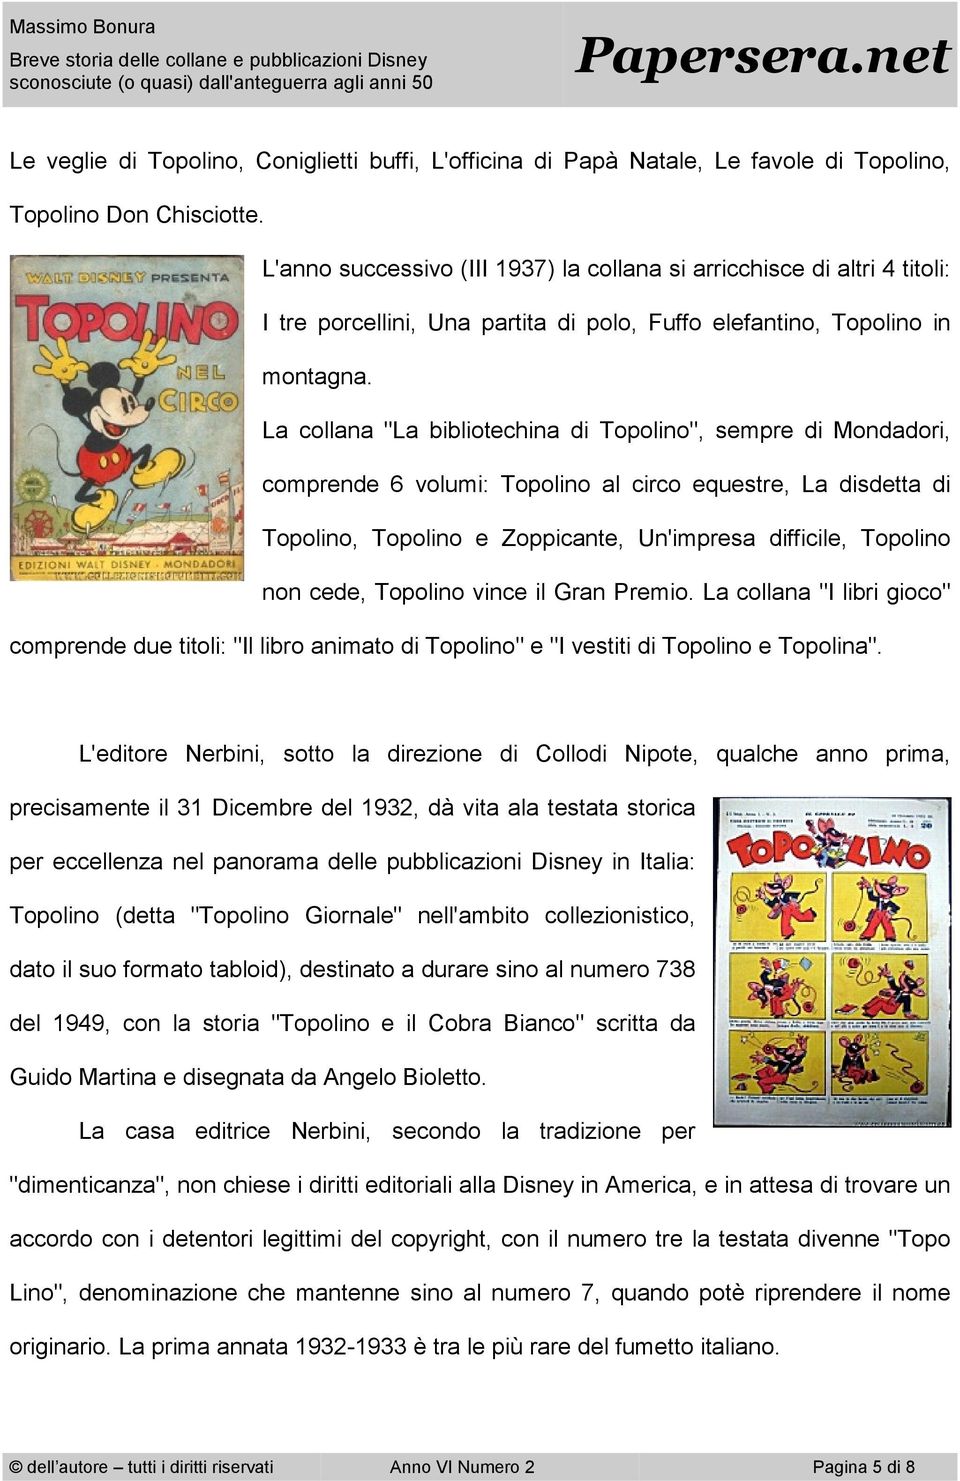 La collana "La bibliotechina di Topolino", sempre di Mondadori, comprende 6 volumi: Topolino al circo equestre, La disdetta di Topolino, Topolino e Zoppicante, Un'impresa difficile, Topolino non